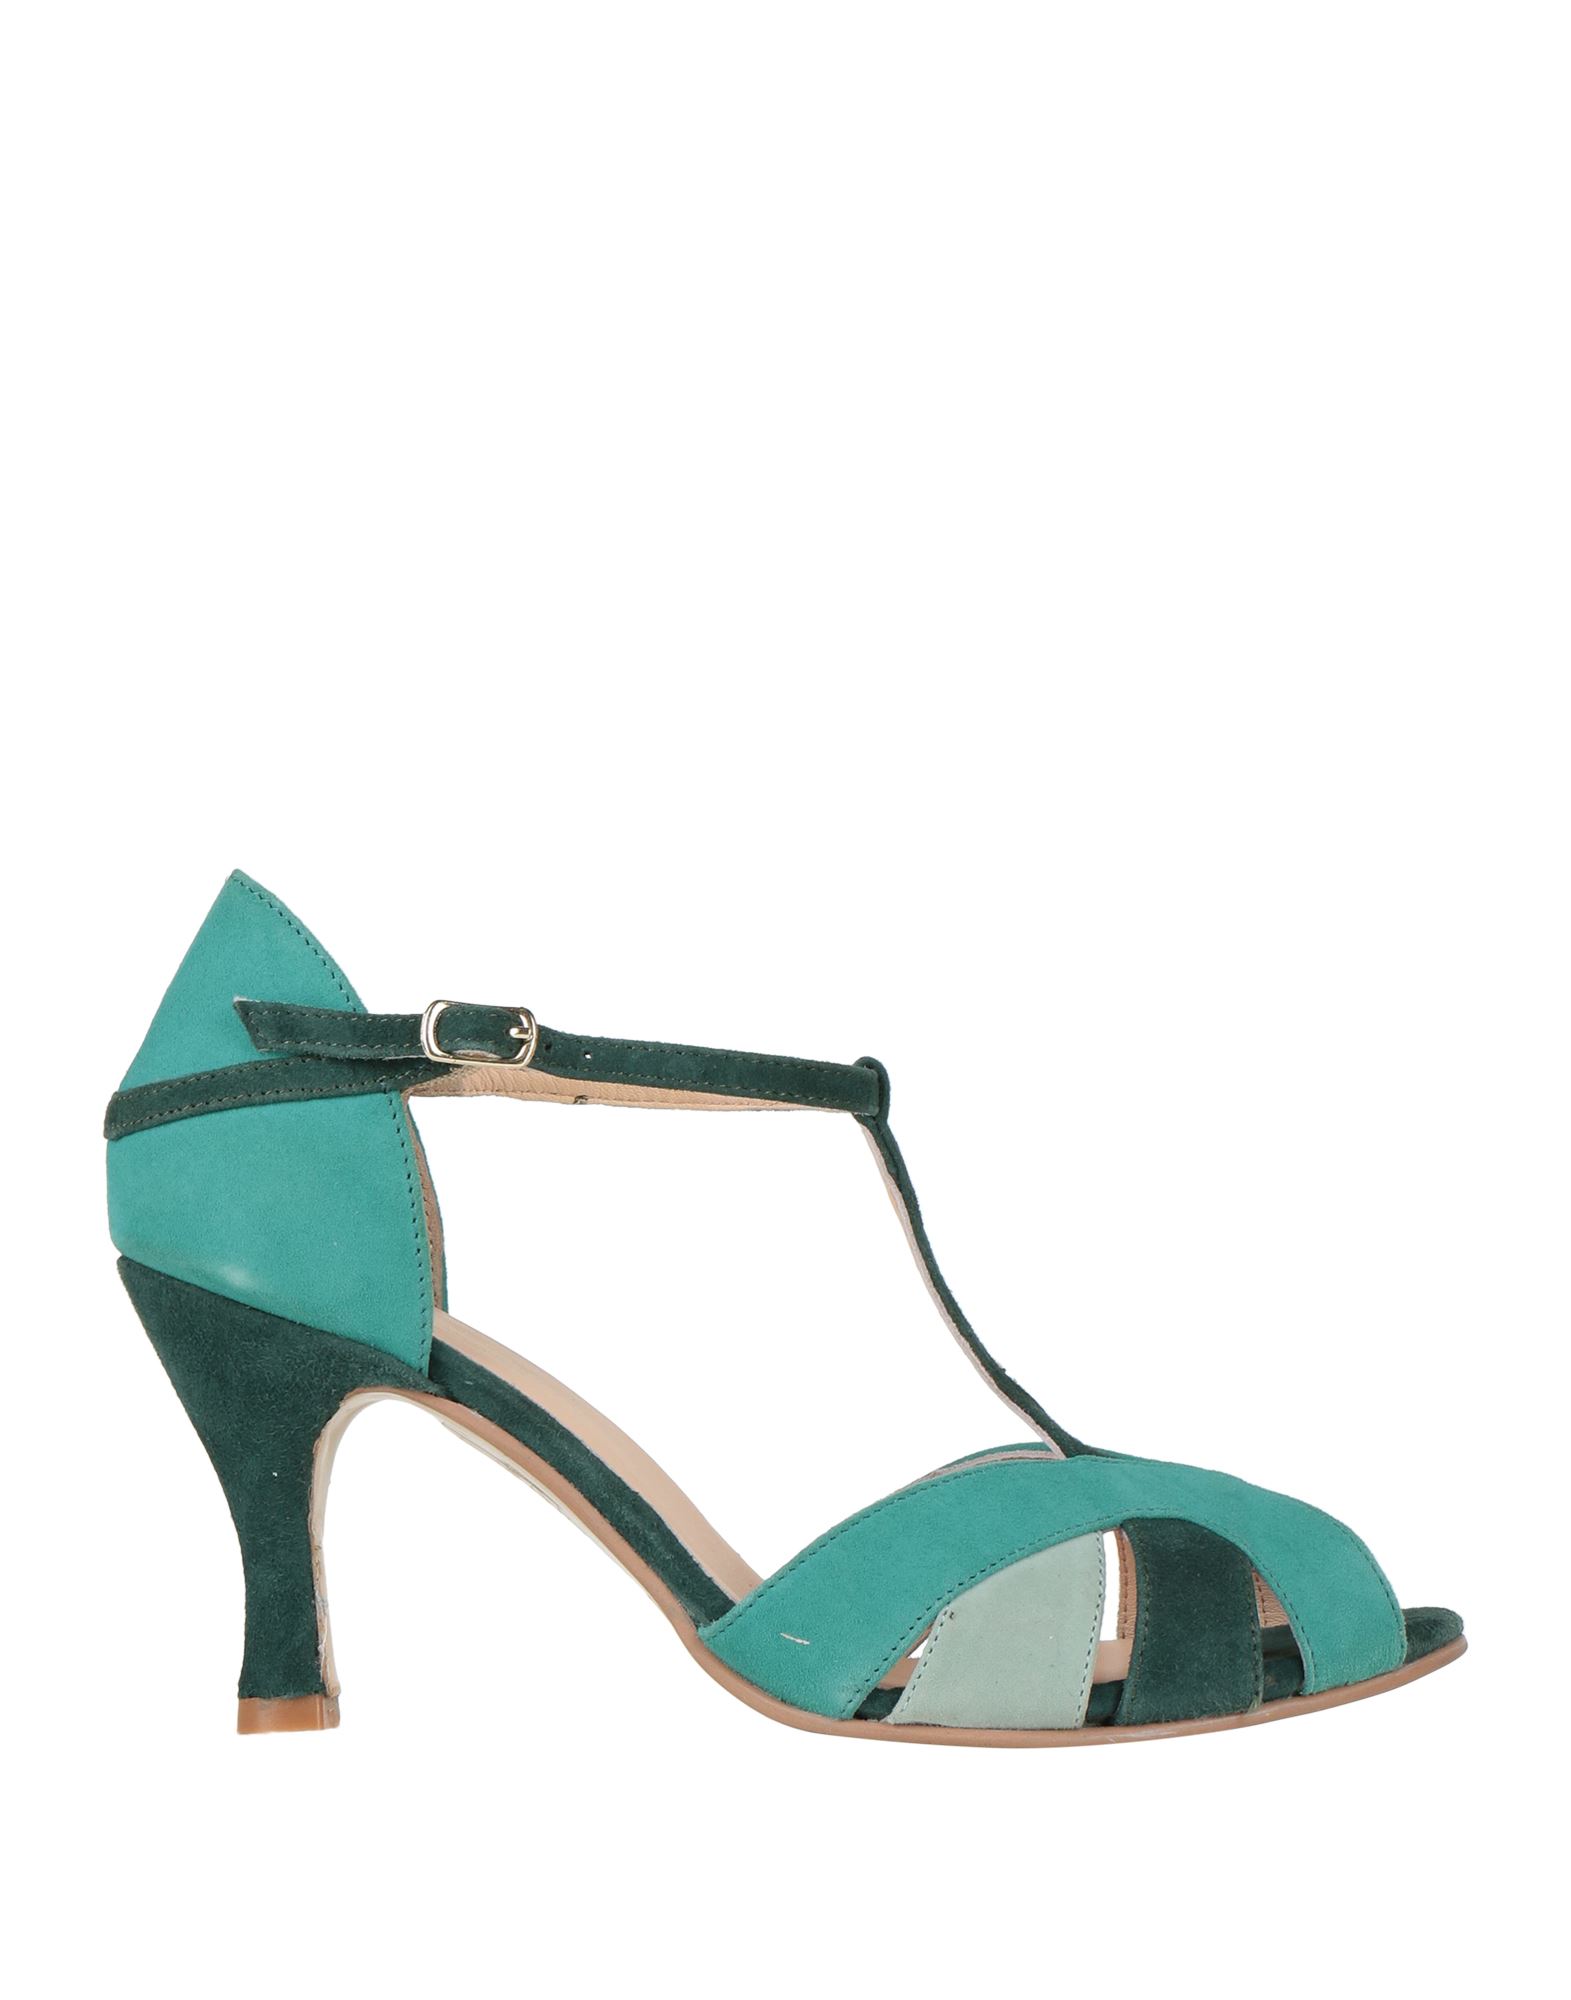 Dora Sandals In Turquoise